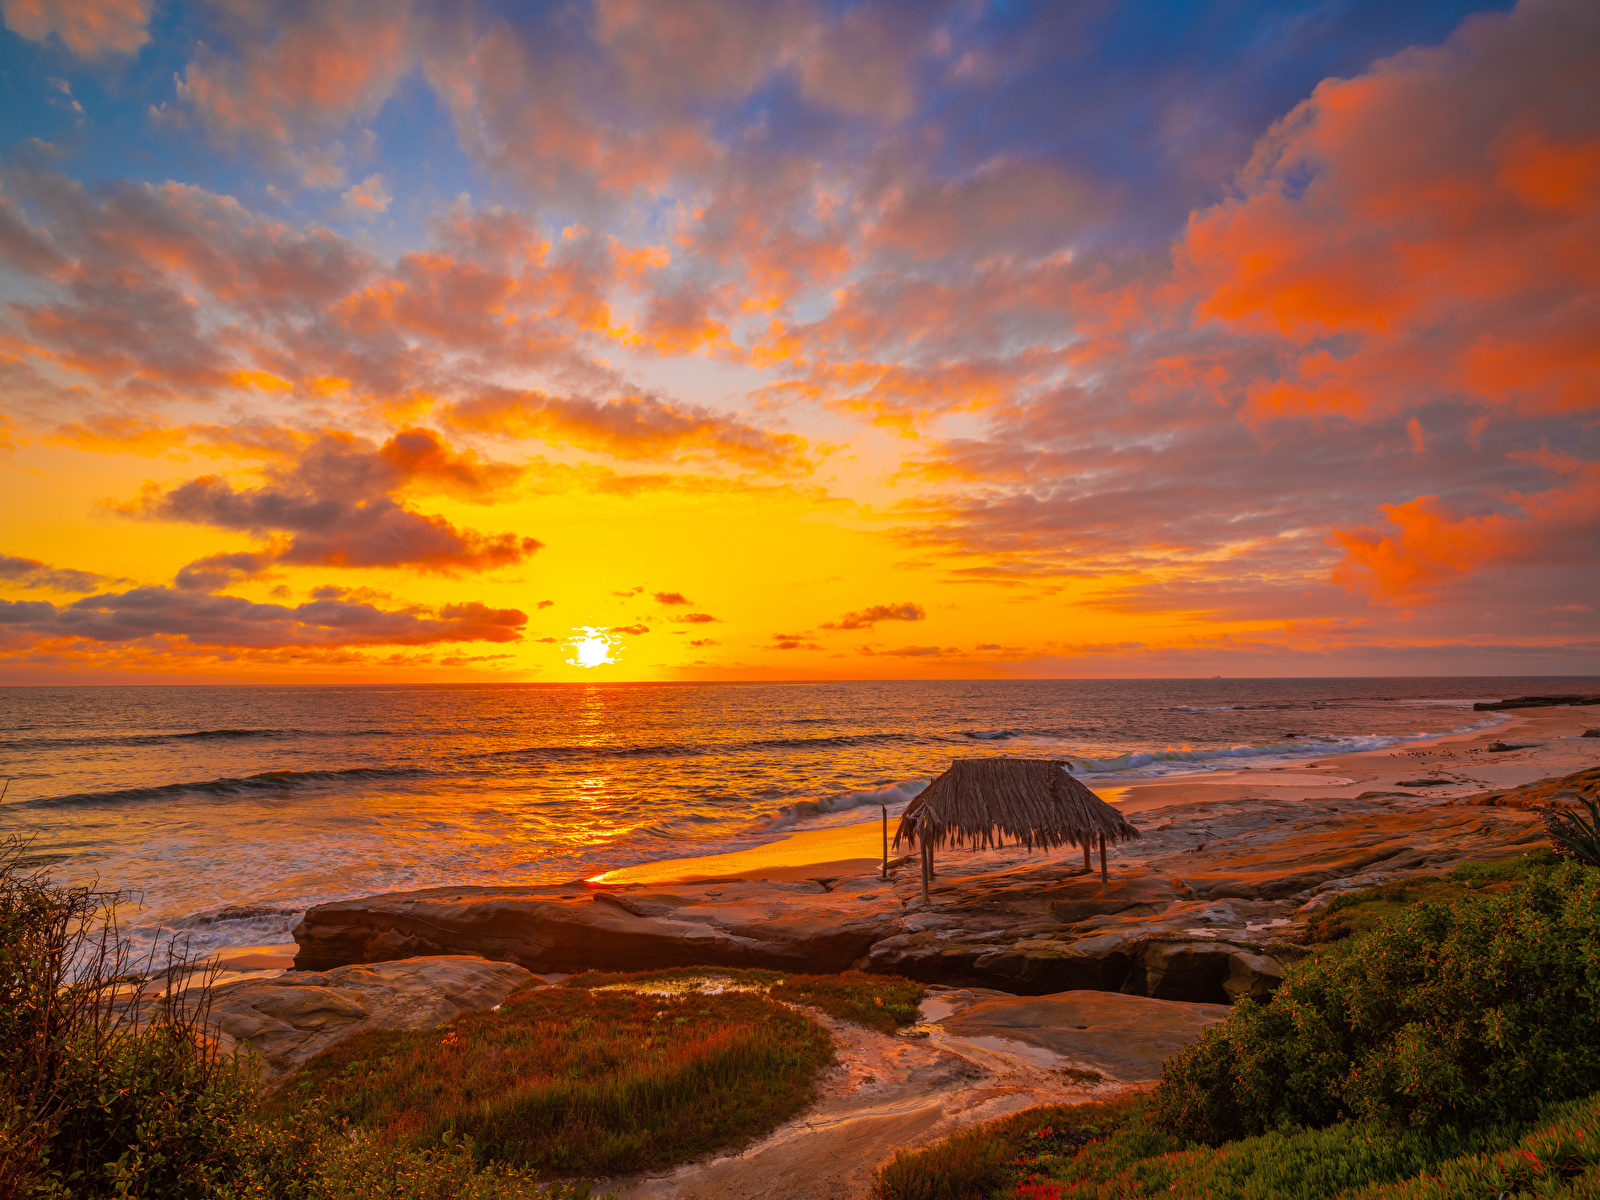 壁紙 1600x10 アメリカ合衆国 海岸 朝焼けと日没 風景写真 空 波 海 Winandsea Beach La Jolla カリフォルニア州 雲 自然 ダウンロード 写真